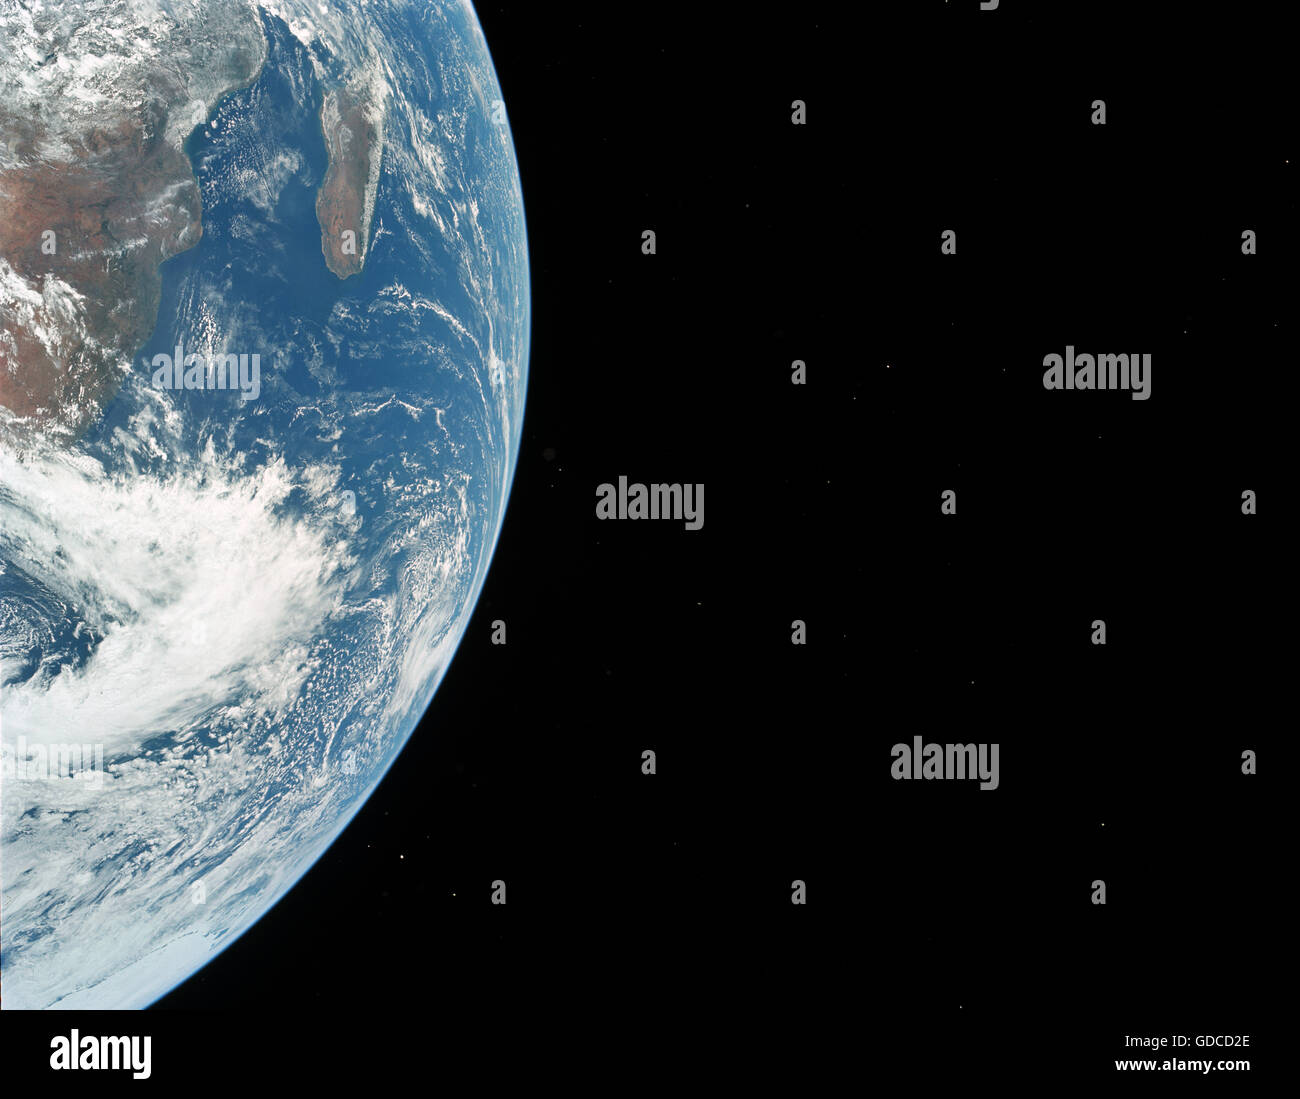 La Terra vista dallo spazio. Elevata risoluzione dell'immagine migliorata. Ottimizzato univoco e la versione avanzata di un originale immagine della NASA Foto Stock